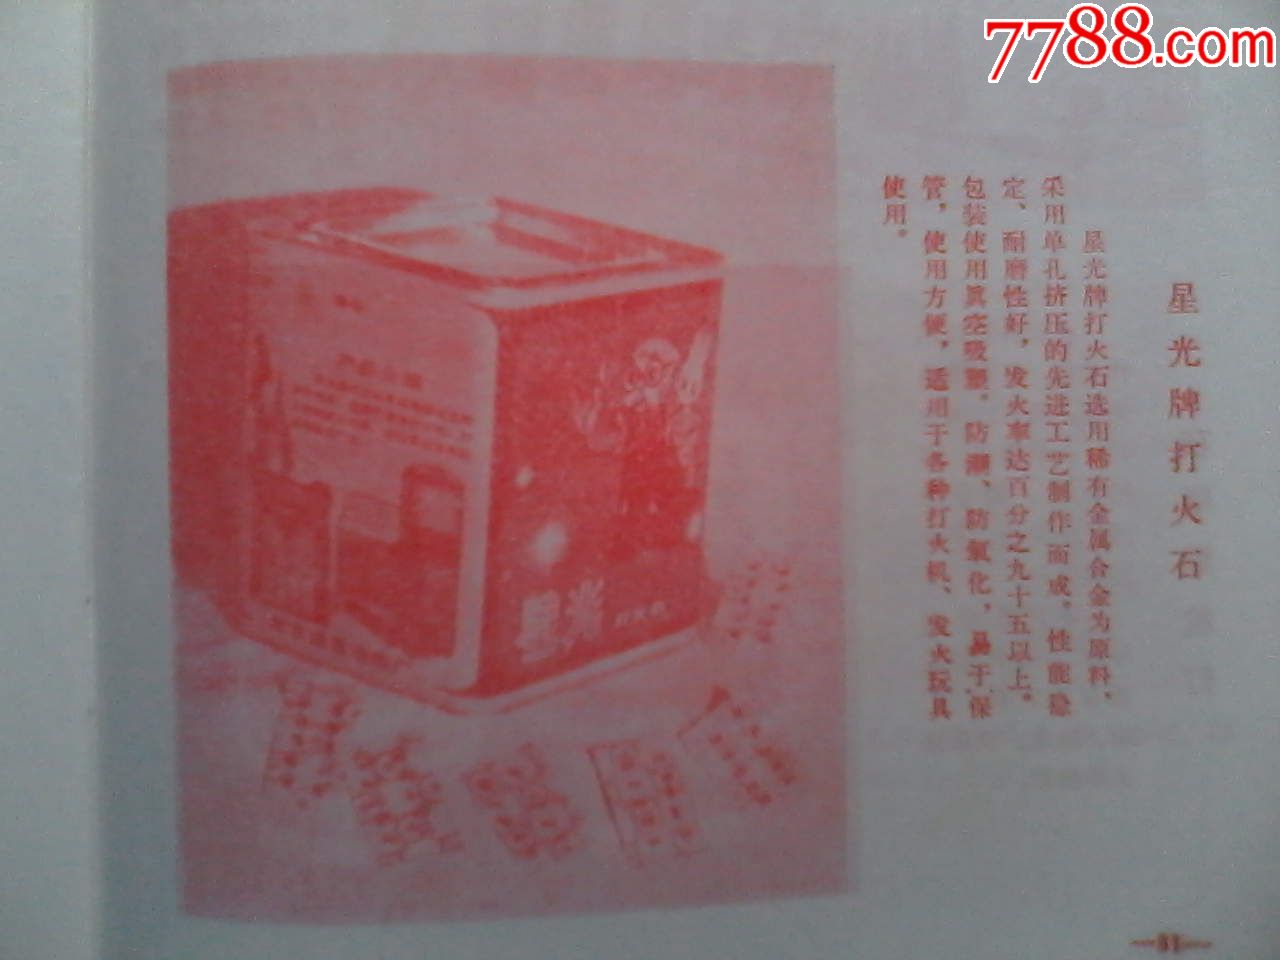 北京市百货公司商品介绍,1980年5月_商品说明